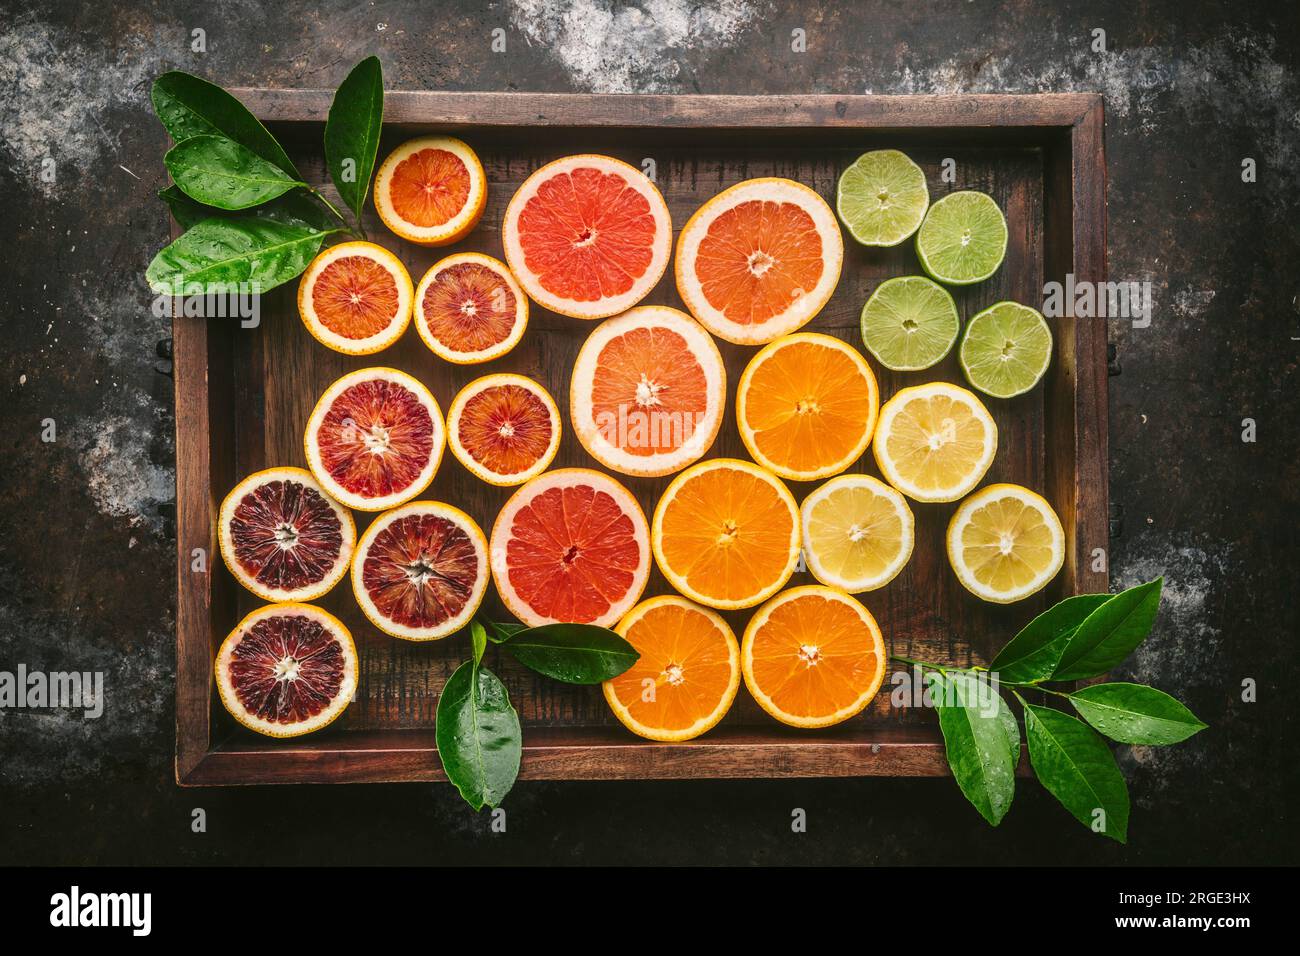 Agrumi (arancia, arancia rossa, pompelmo, limone, lime) tagliati a metà e disposti per colore in scatola di legno rustico con foglie di agrumi fresche Foto Stock